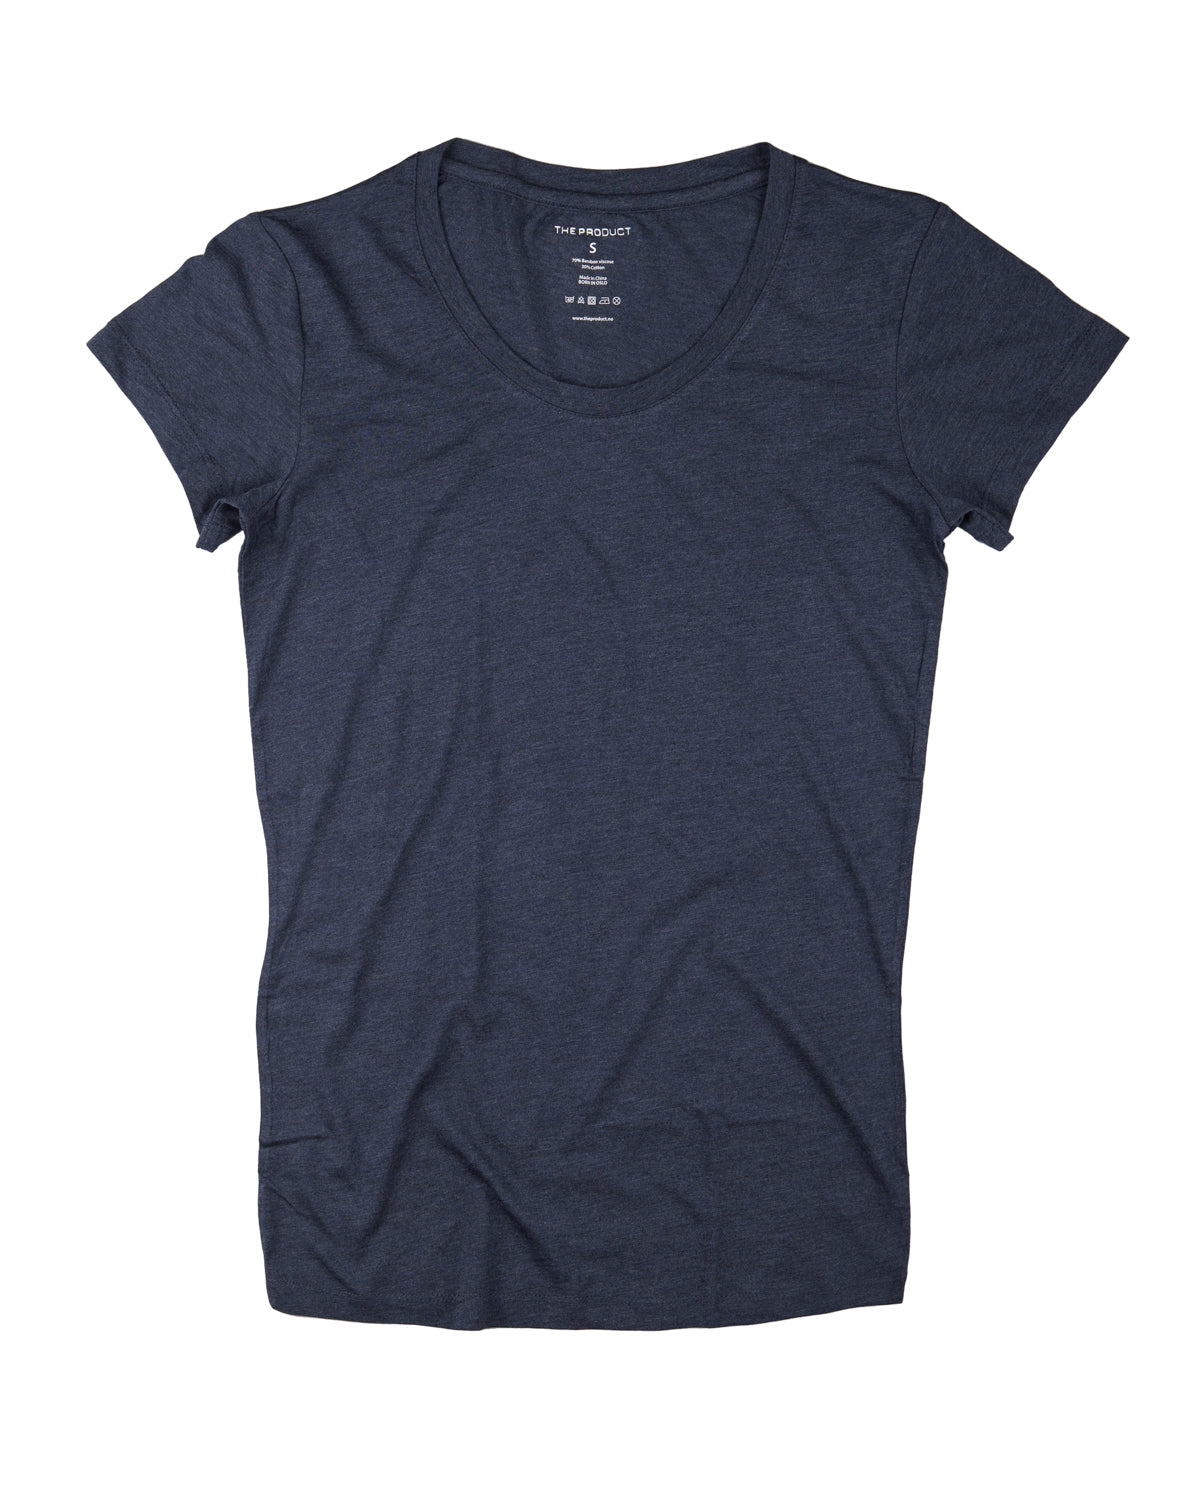 Women's T-shirt - Blue Melange - The Product - T-skjorter & Topper - VILLOID.no